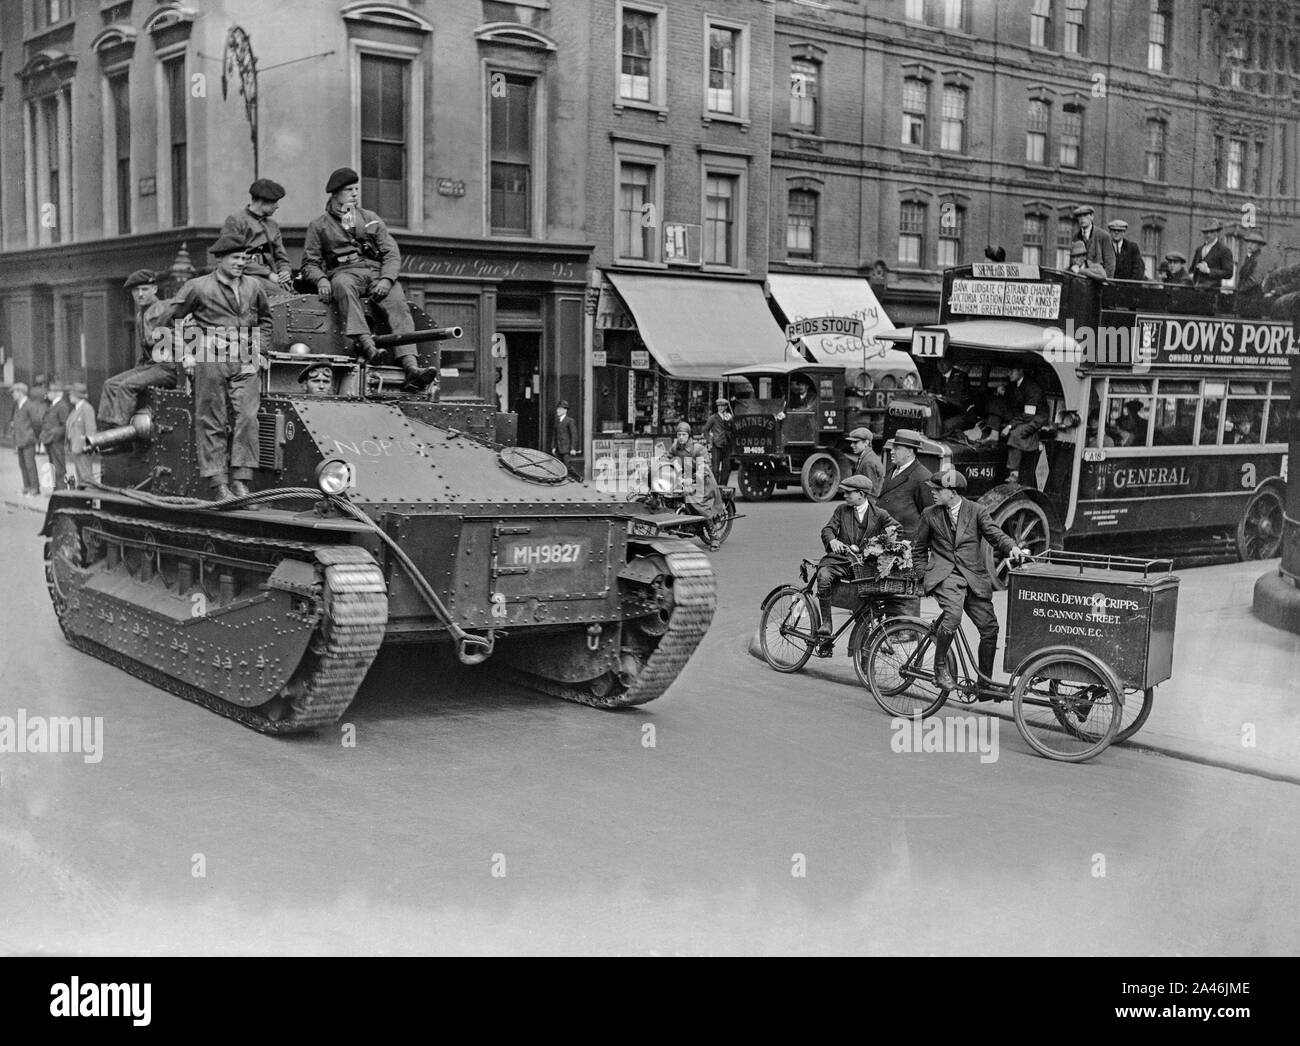 10 mai 1926. Londres, Angleterre. Des troupes dans des véhicules blindés dans les rues de Londres dans une tentative de garder le contrôle et maintenir les services de base, au cours de la grève générale au Royaume-Uni, qui a duré du 3 au 12 mai 1926. Banque D'Images